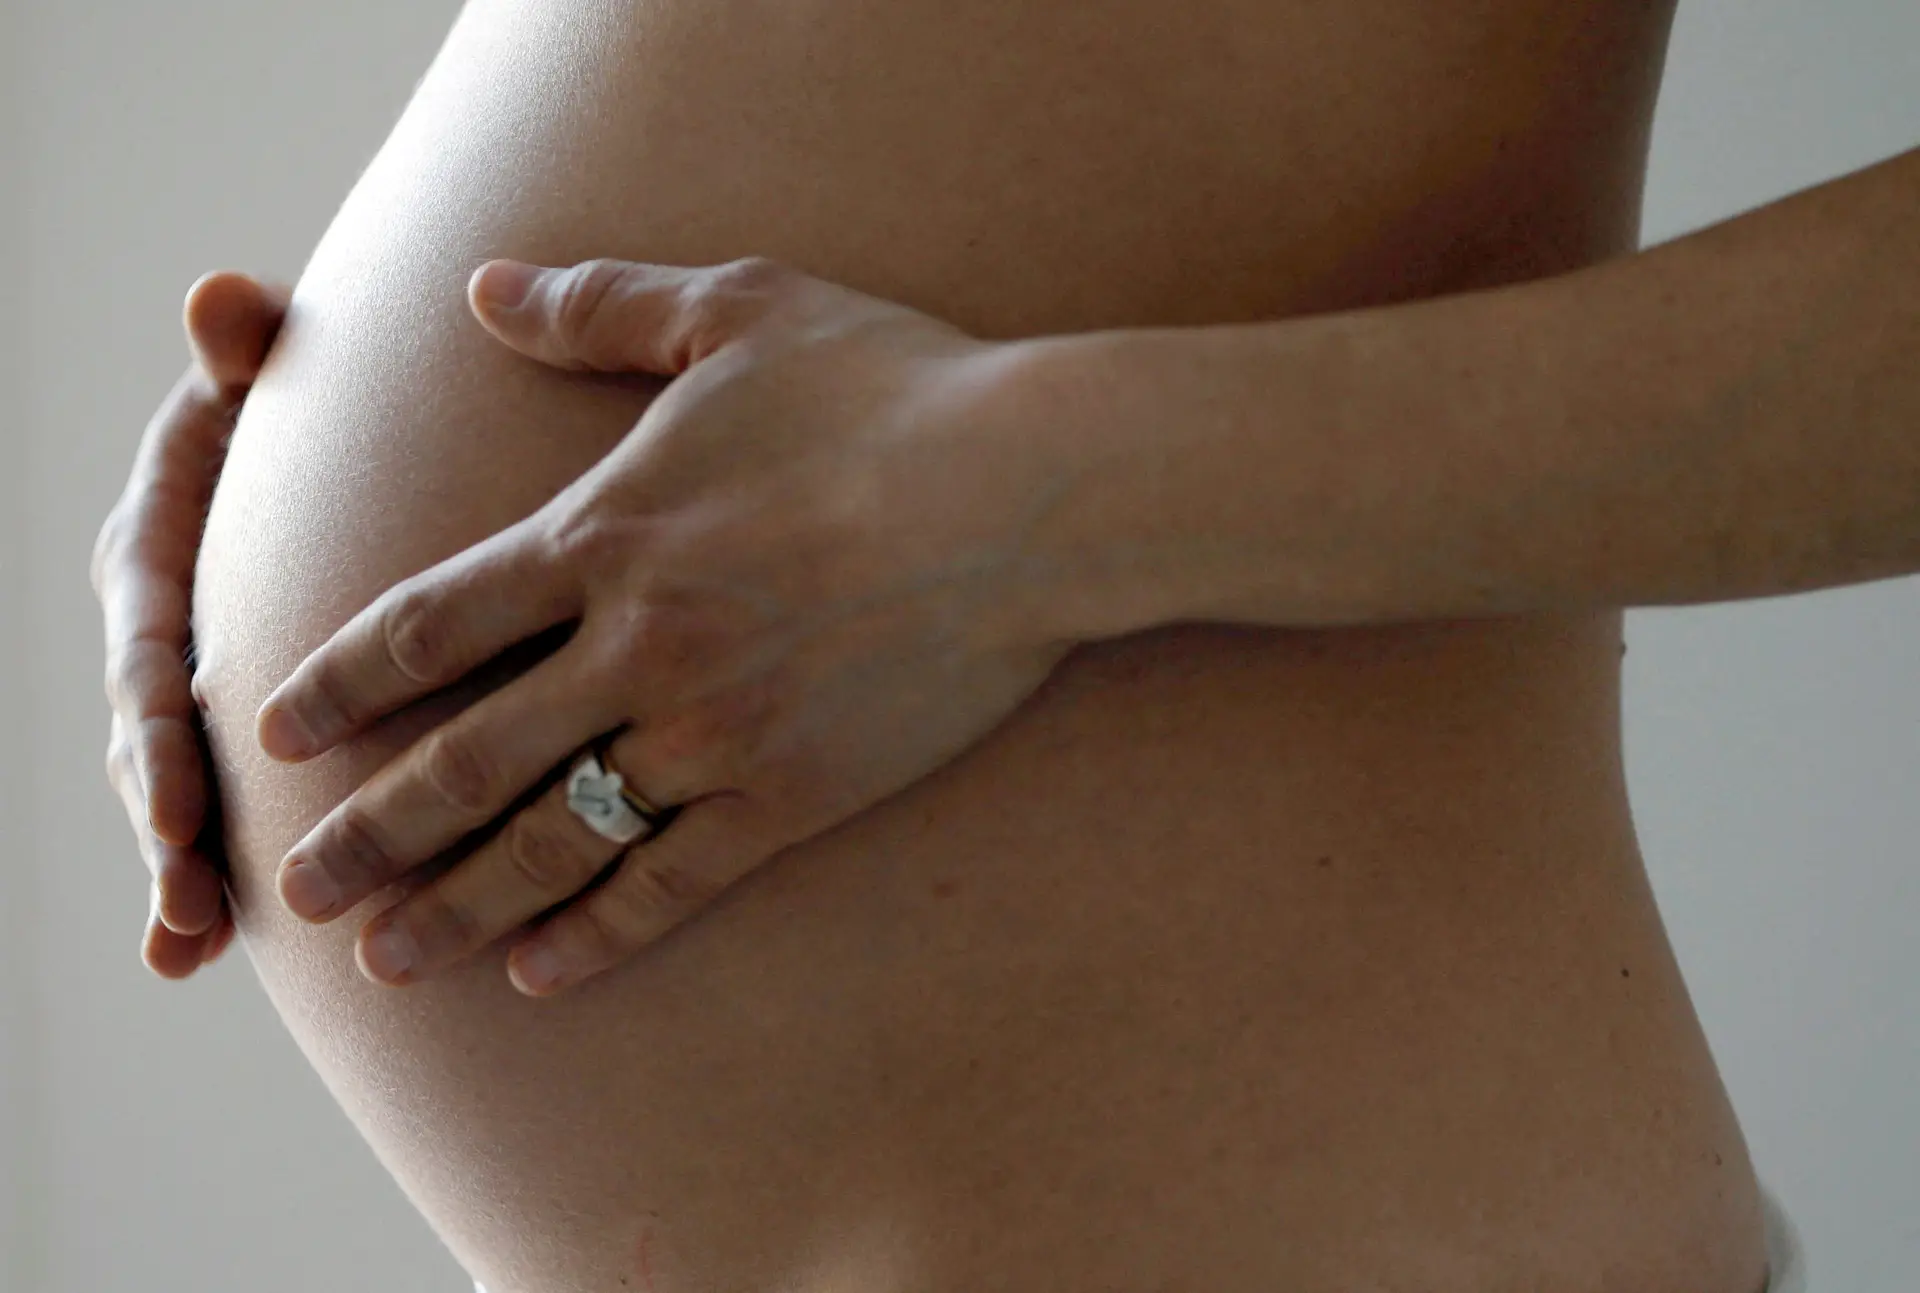 Ministro da Saúde vai decidir se as grávidas vão pagar taxas por urgências injustificadas